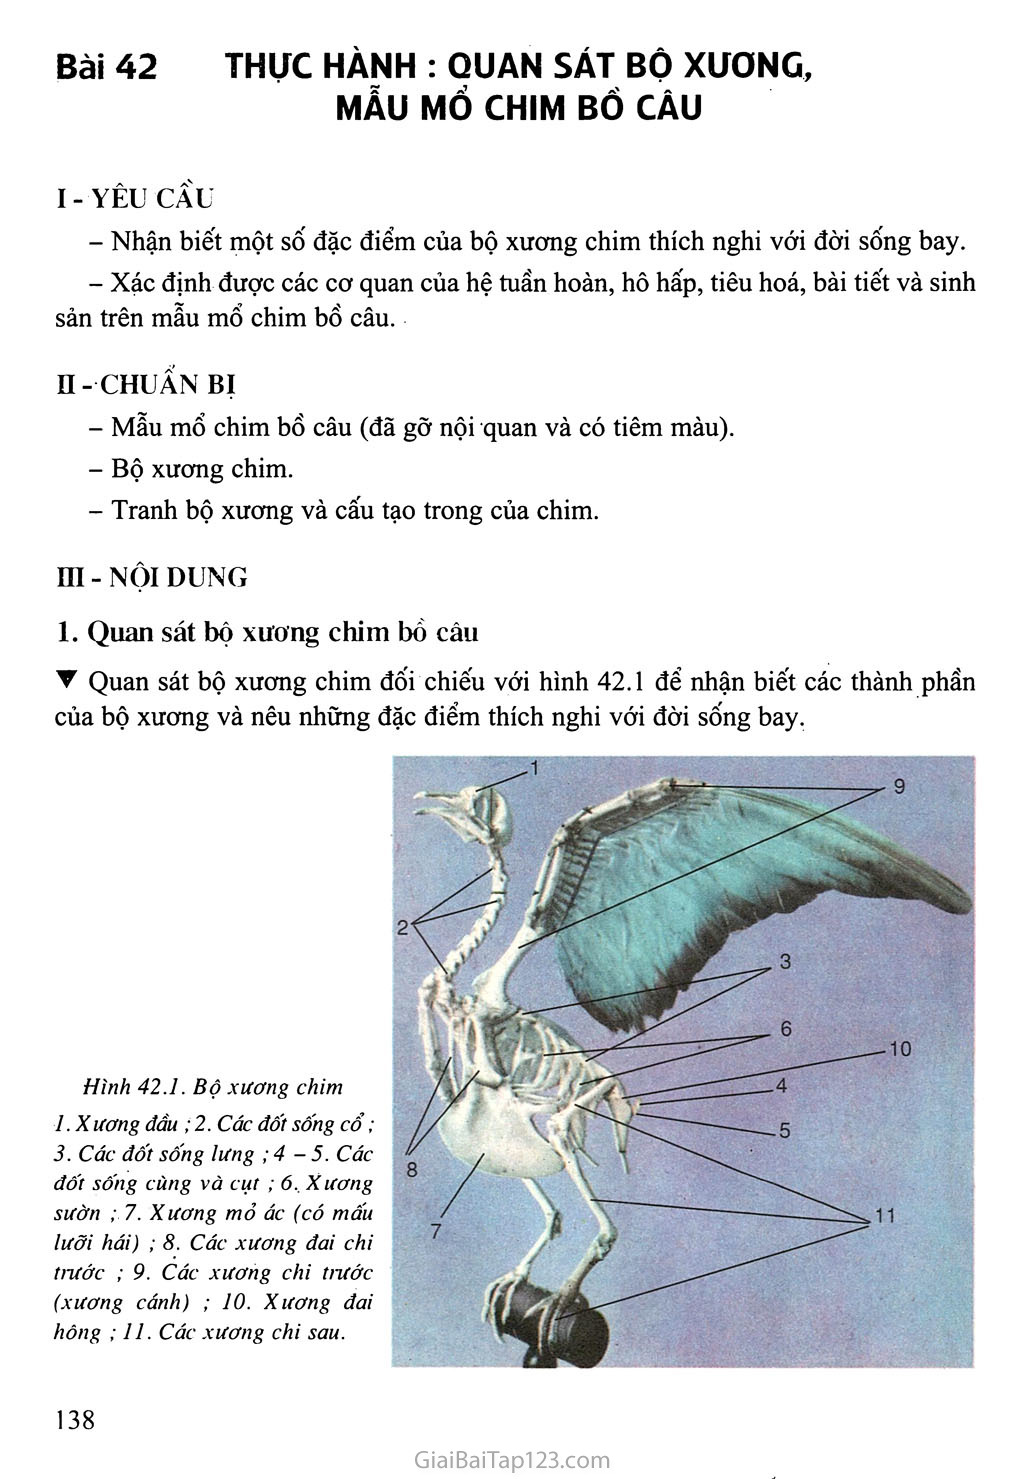 Bài 42: Thực hành: Quan sát bộ xương, mẫu mổ chim bồ câu trang 1